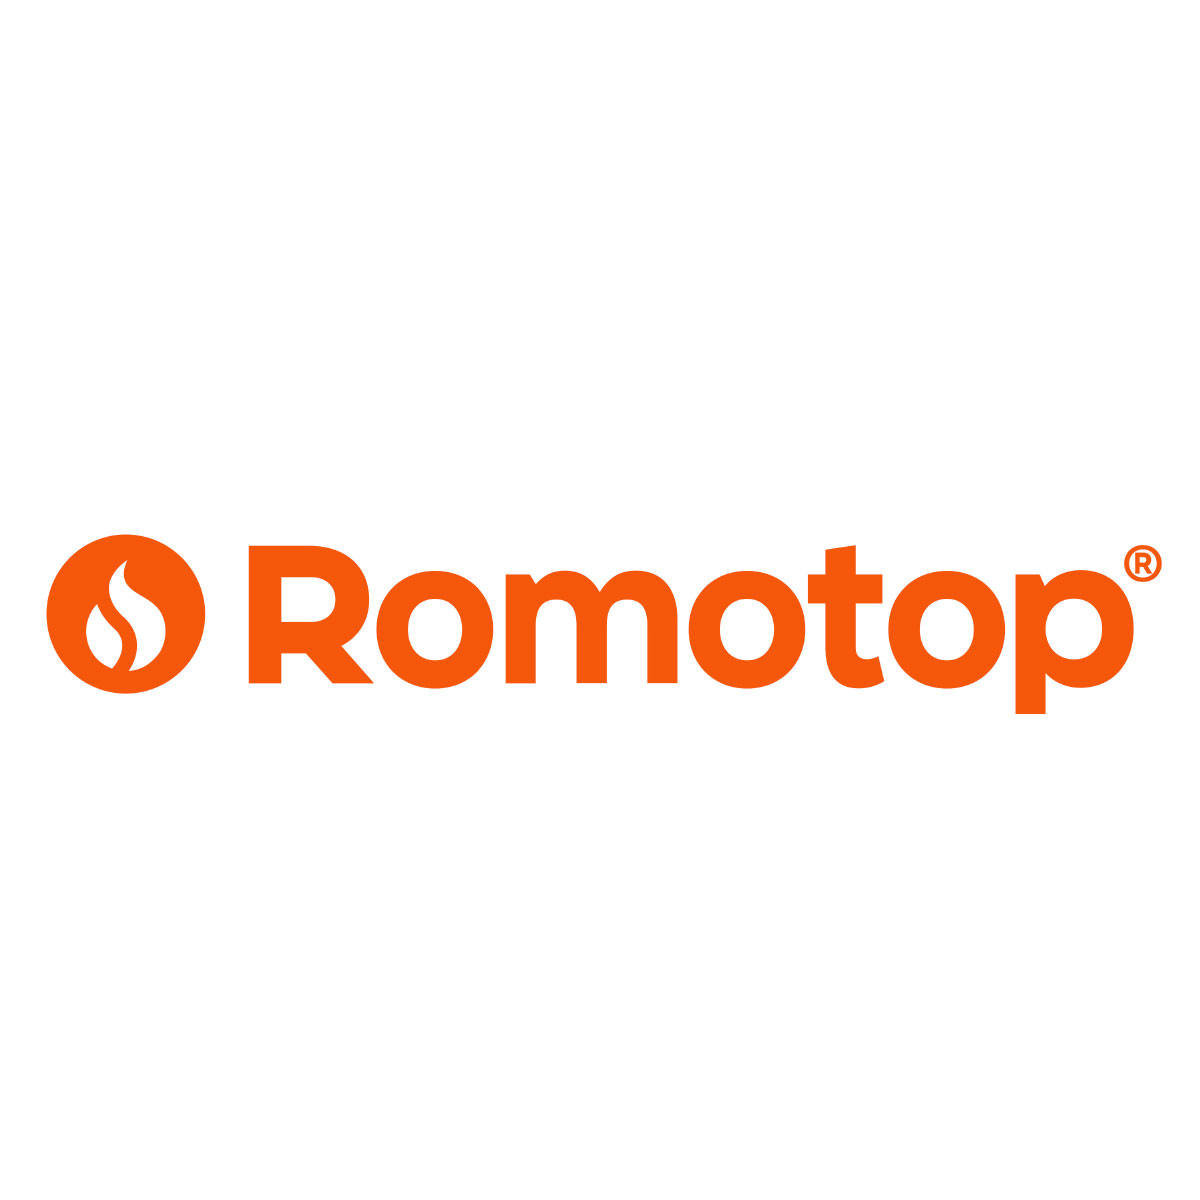 Romotop Logos, Ecothermo